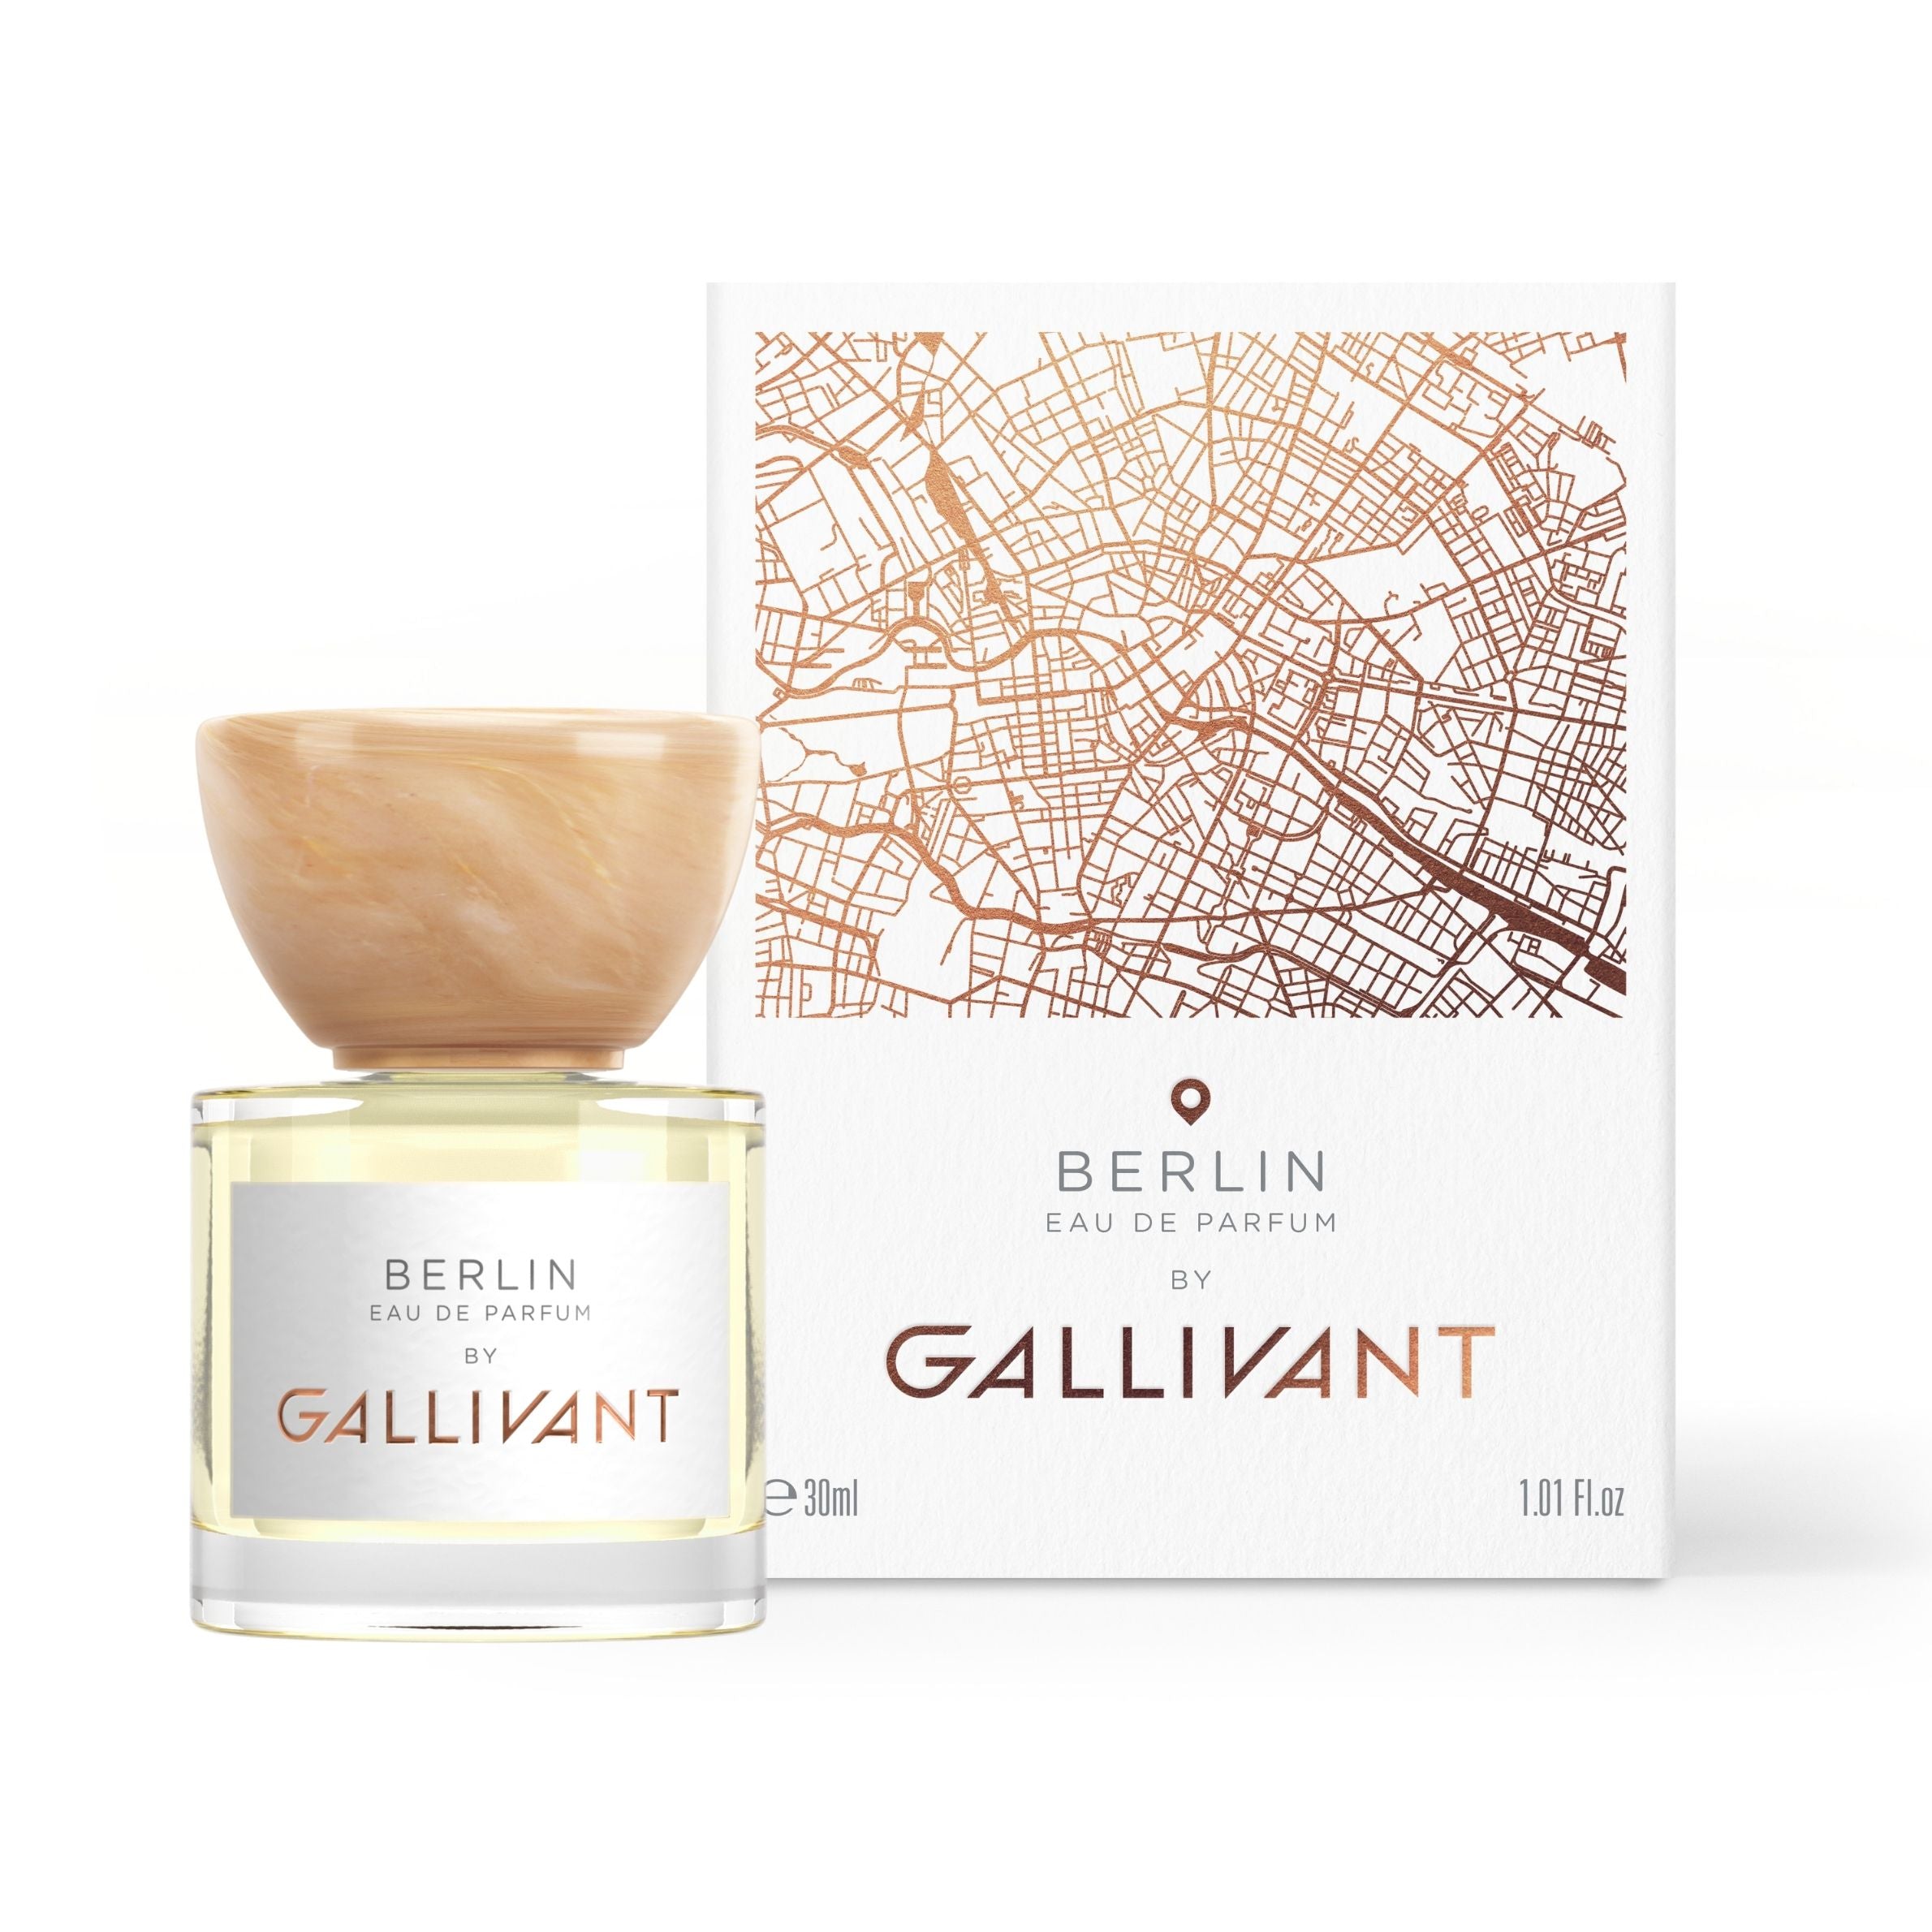 Berlin Eau de Parfum 30ml Bottle and Box by Gallivant